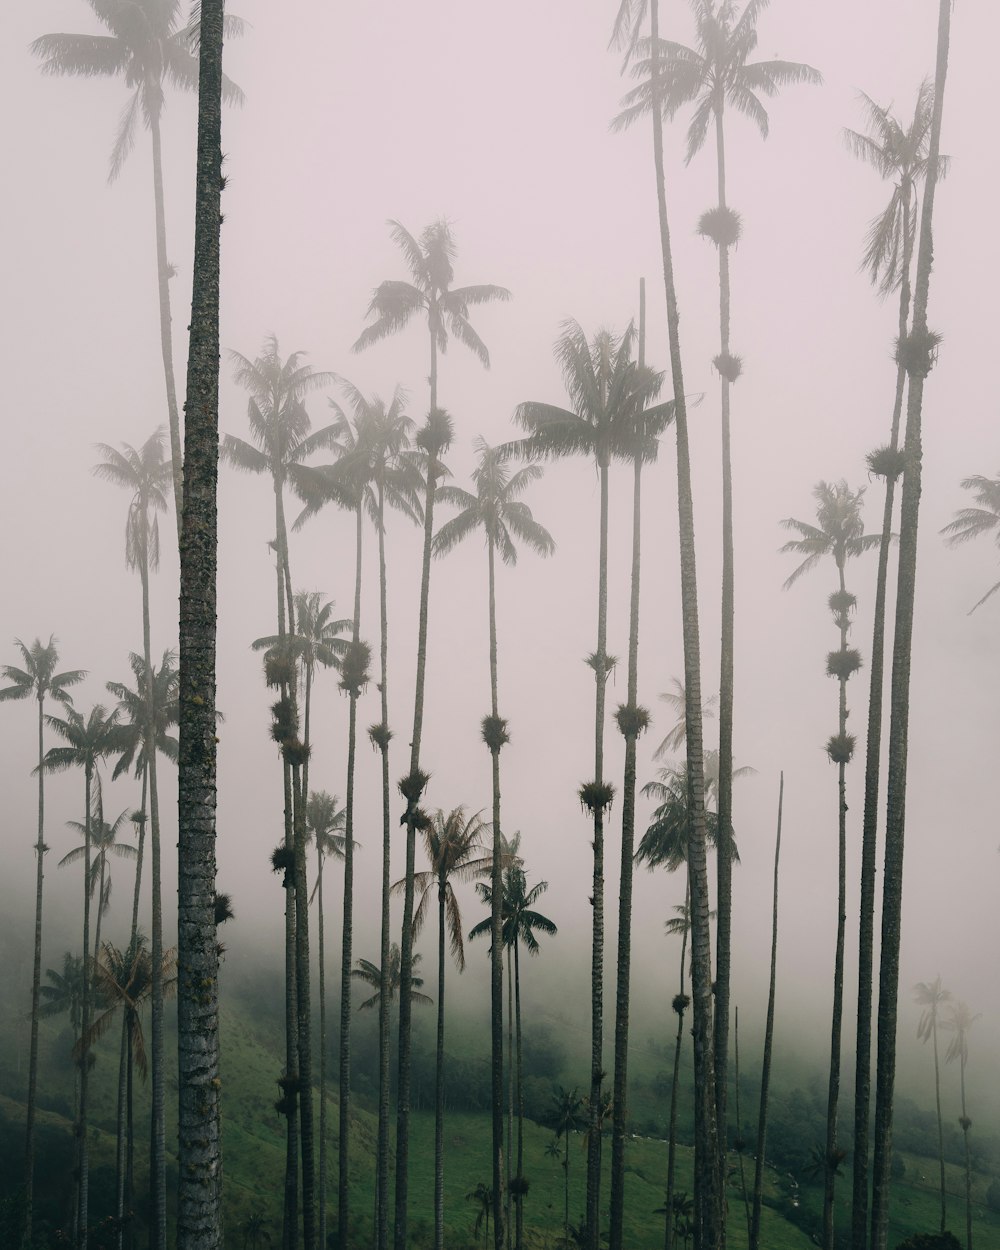 코코넛 나무의 그레이스케일 사진